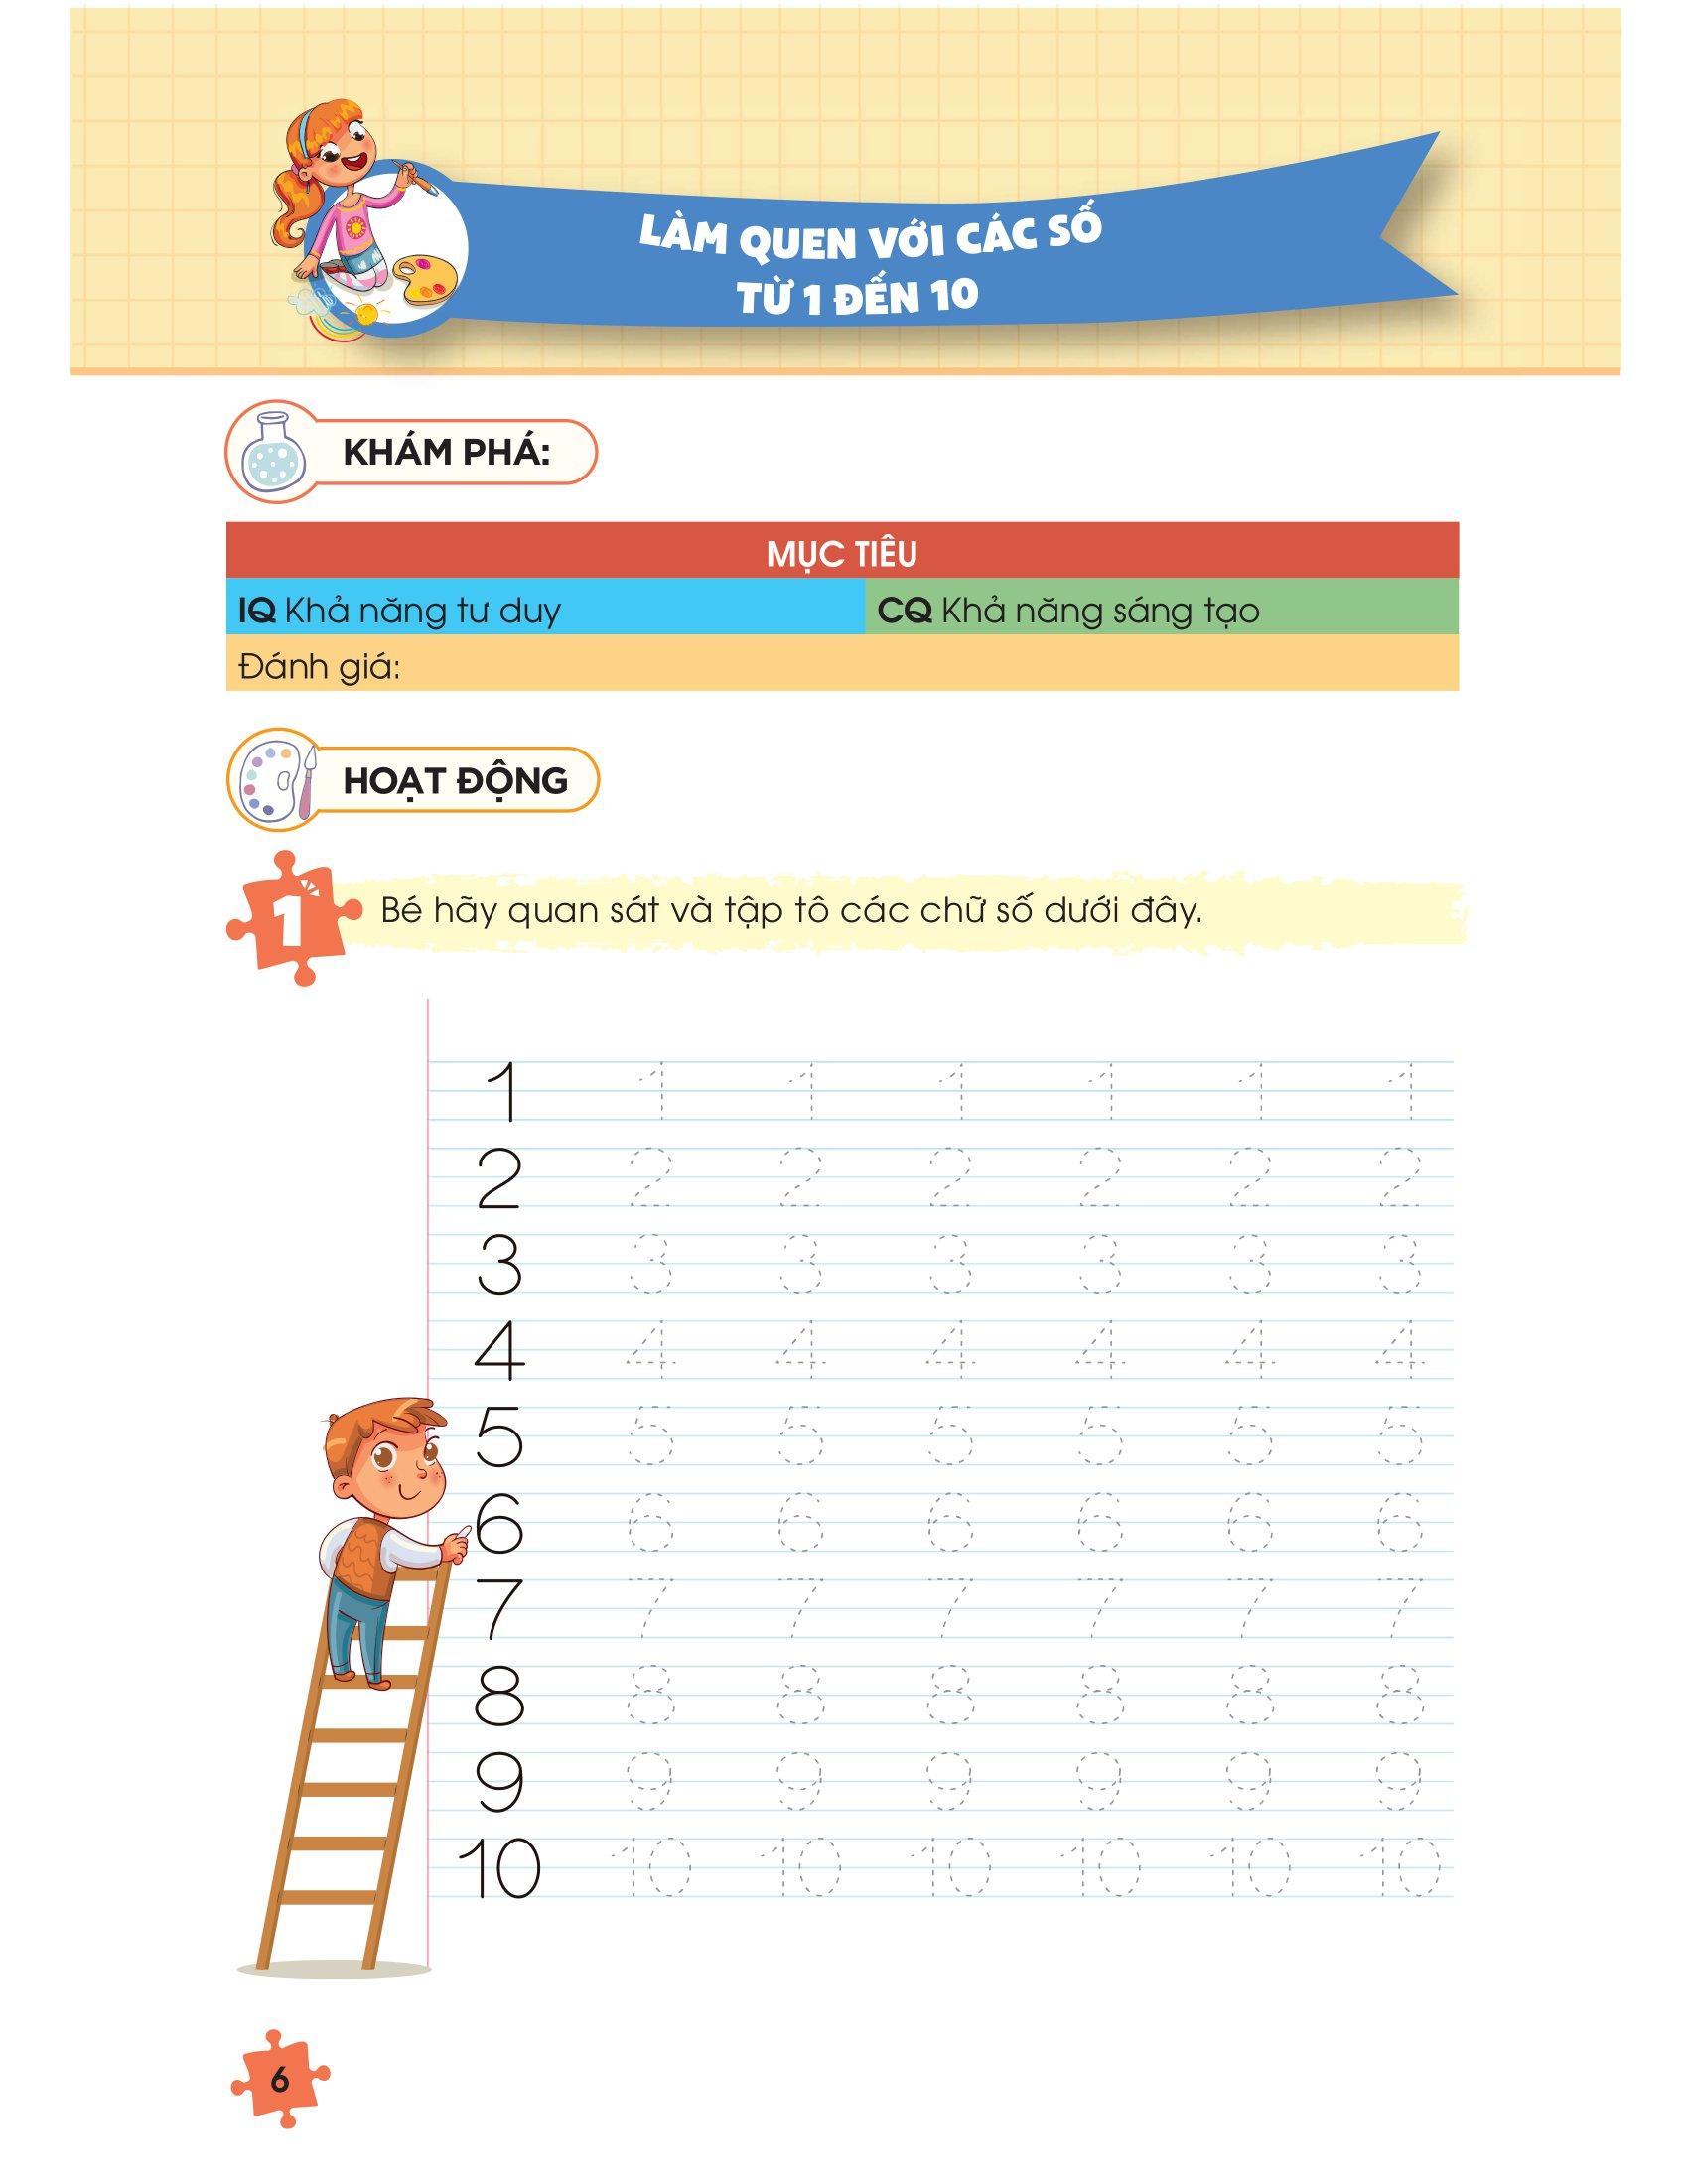 IQ Montessori Toán Học - Phát Triển Toàn Diện Khả Năng Tư Duy Logic Cho Trẻ Từ 3-6 Tuổi